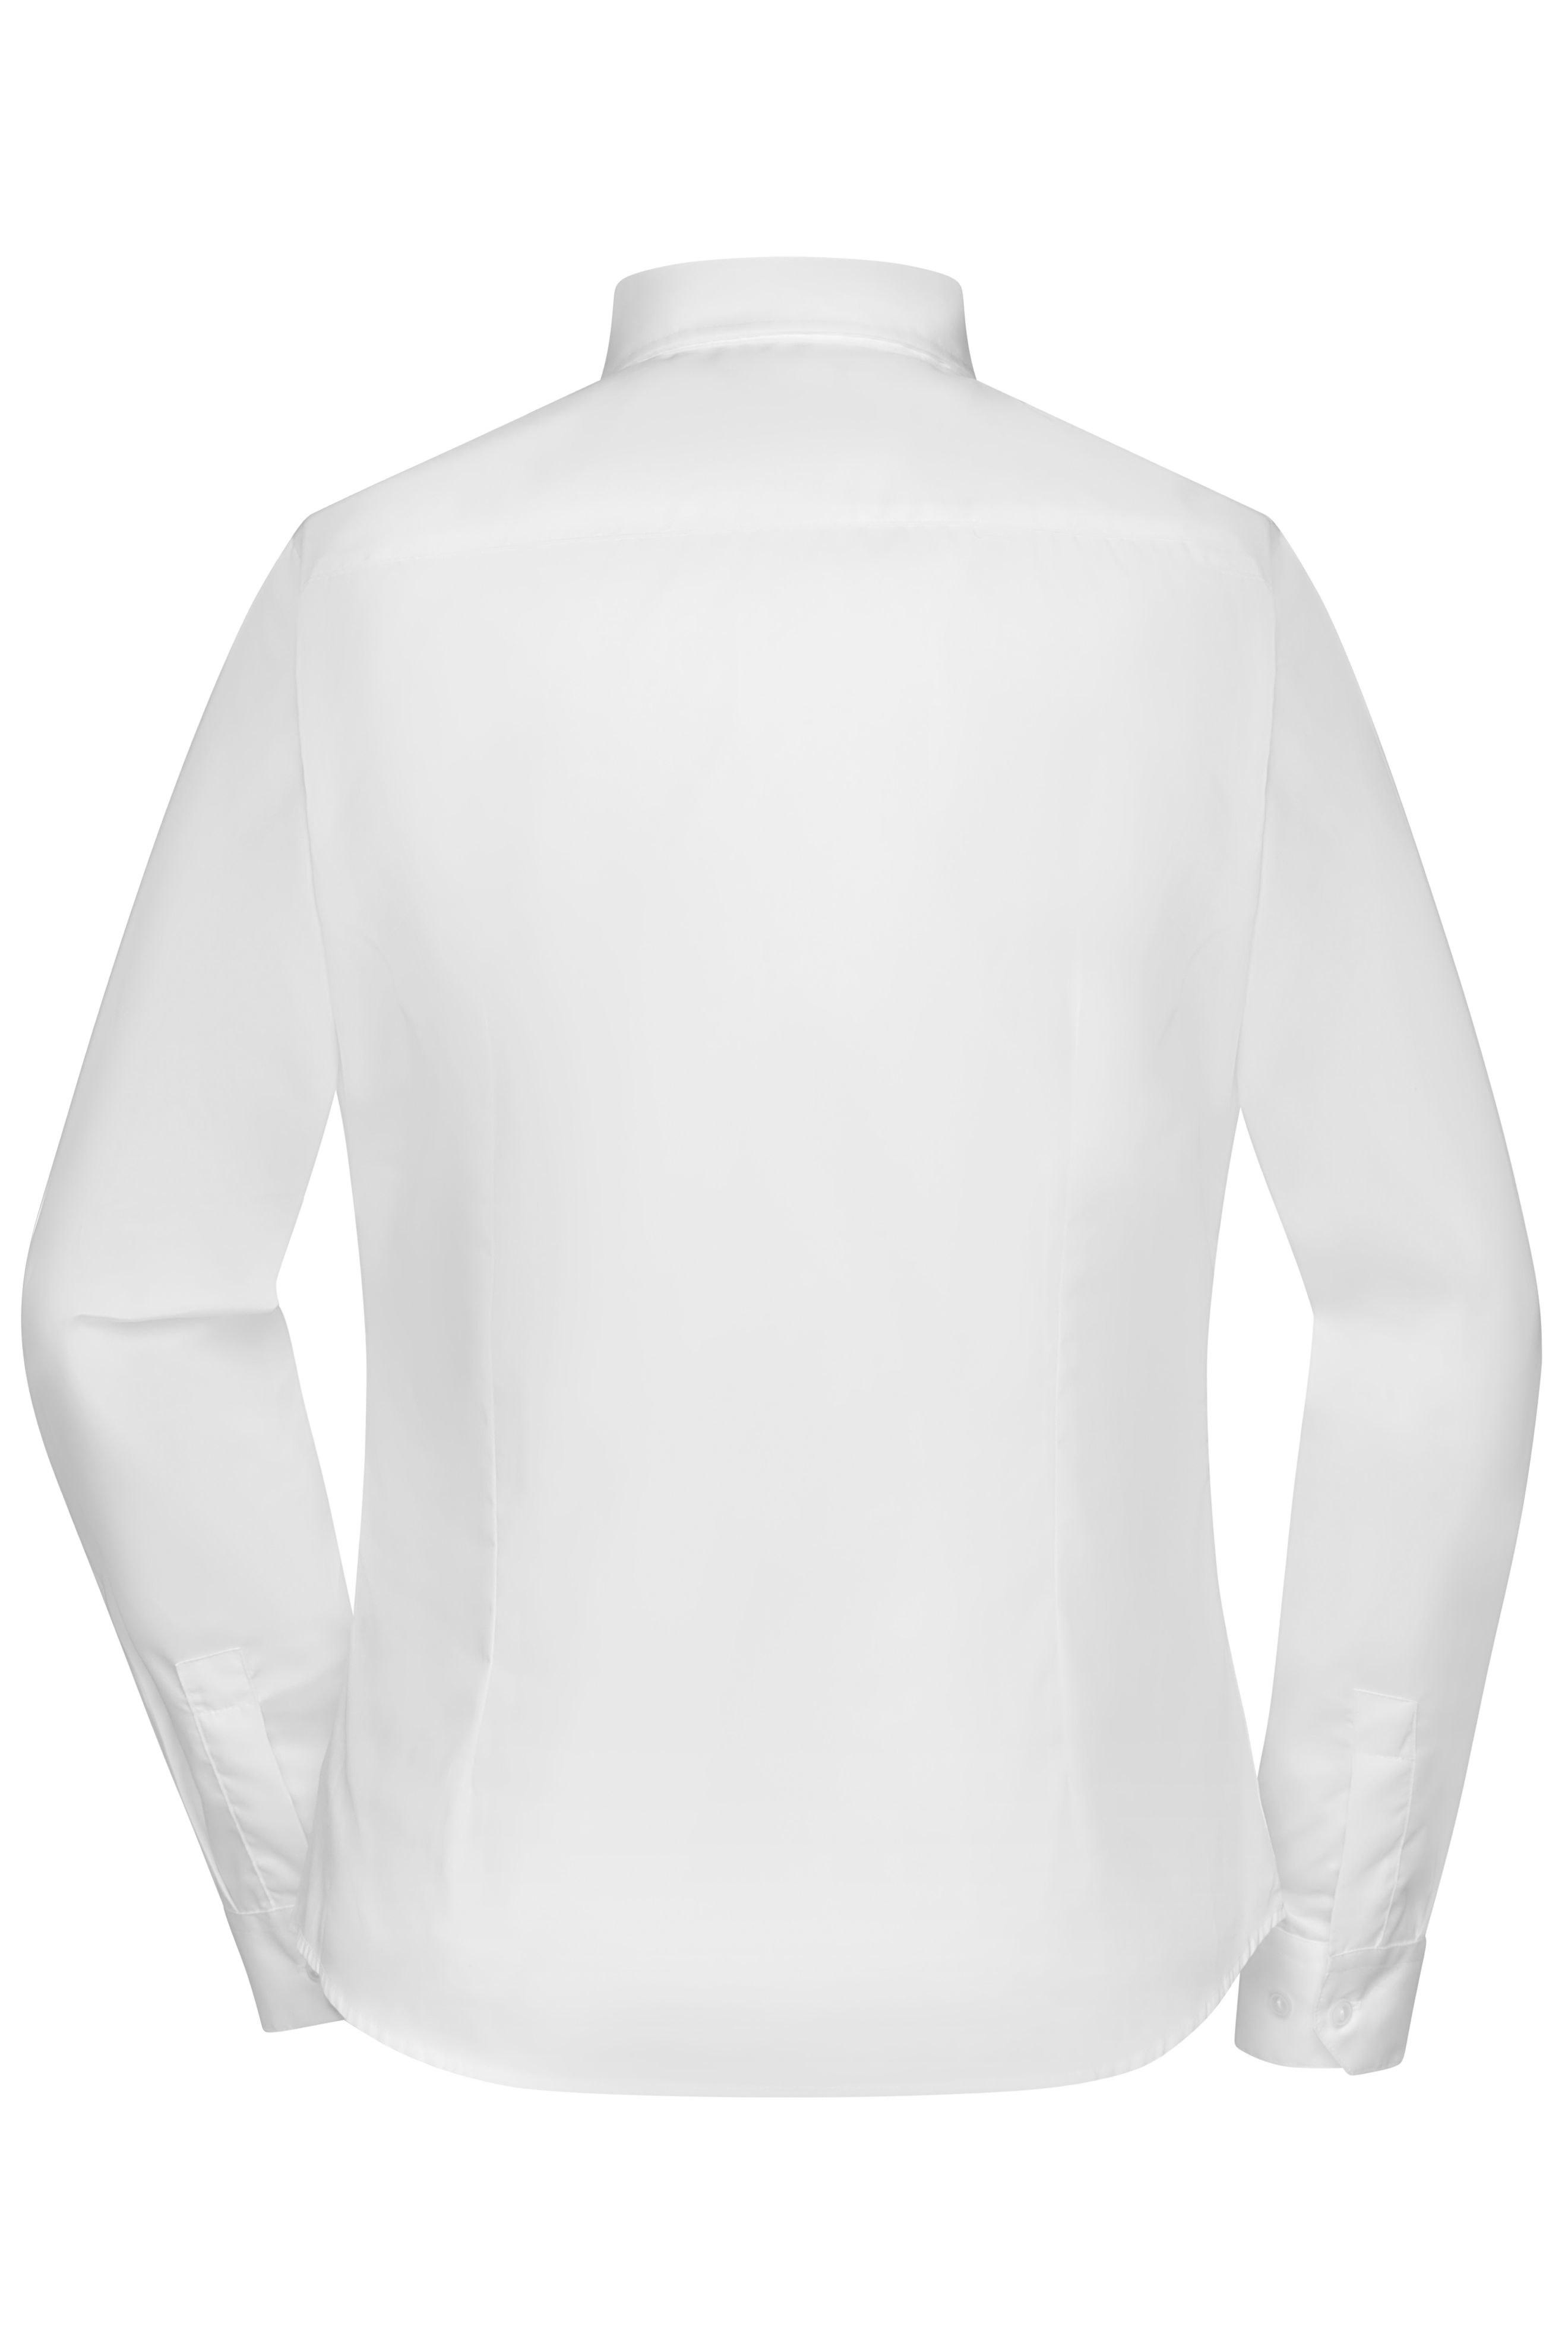 Ladies' Long-Sleeved Blouse JN615 Bügelleichte Langarm Damen-Bluse für Business und City